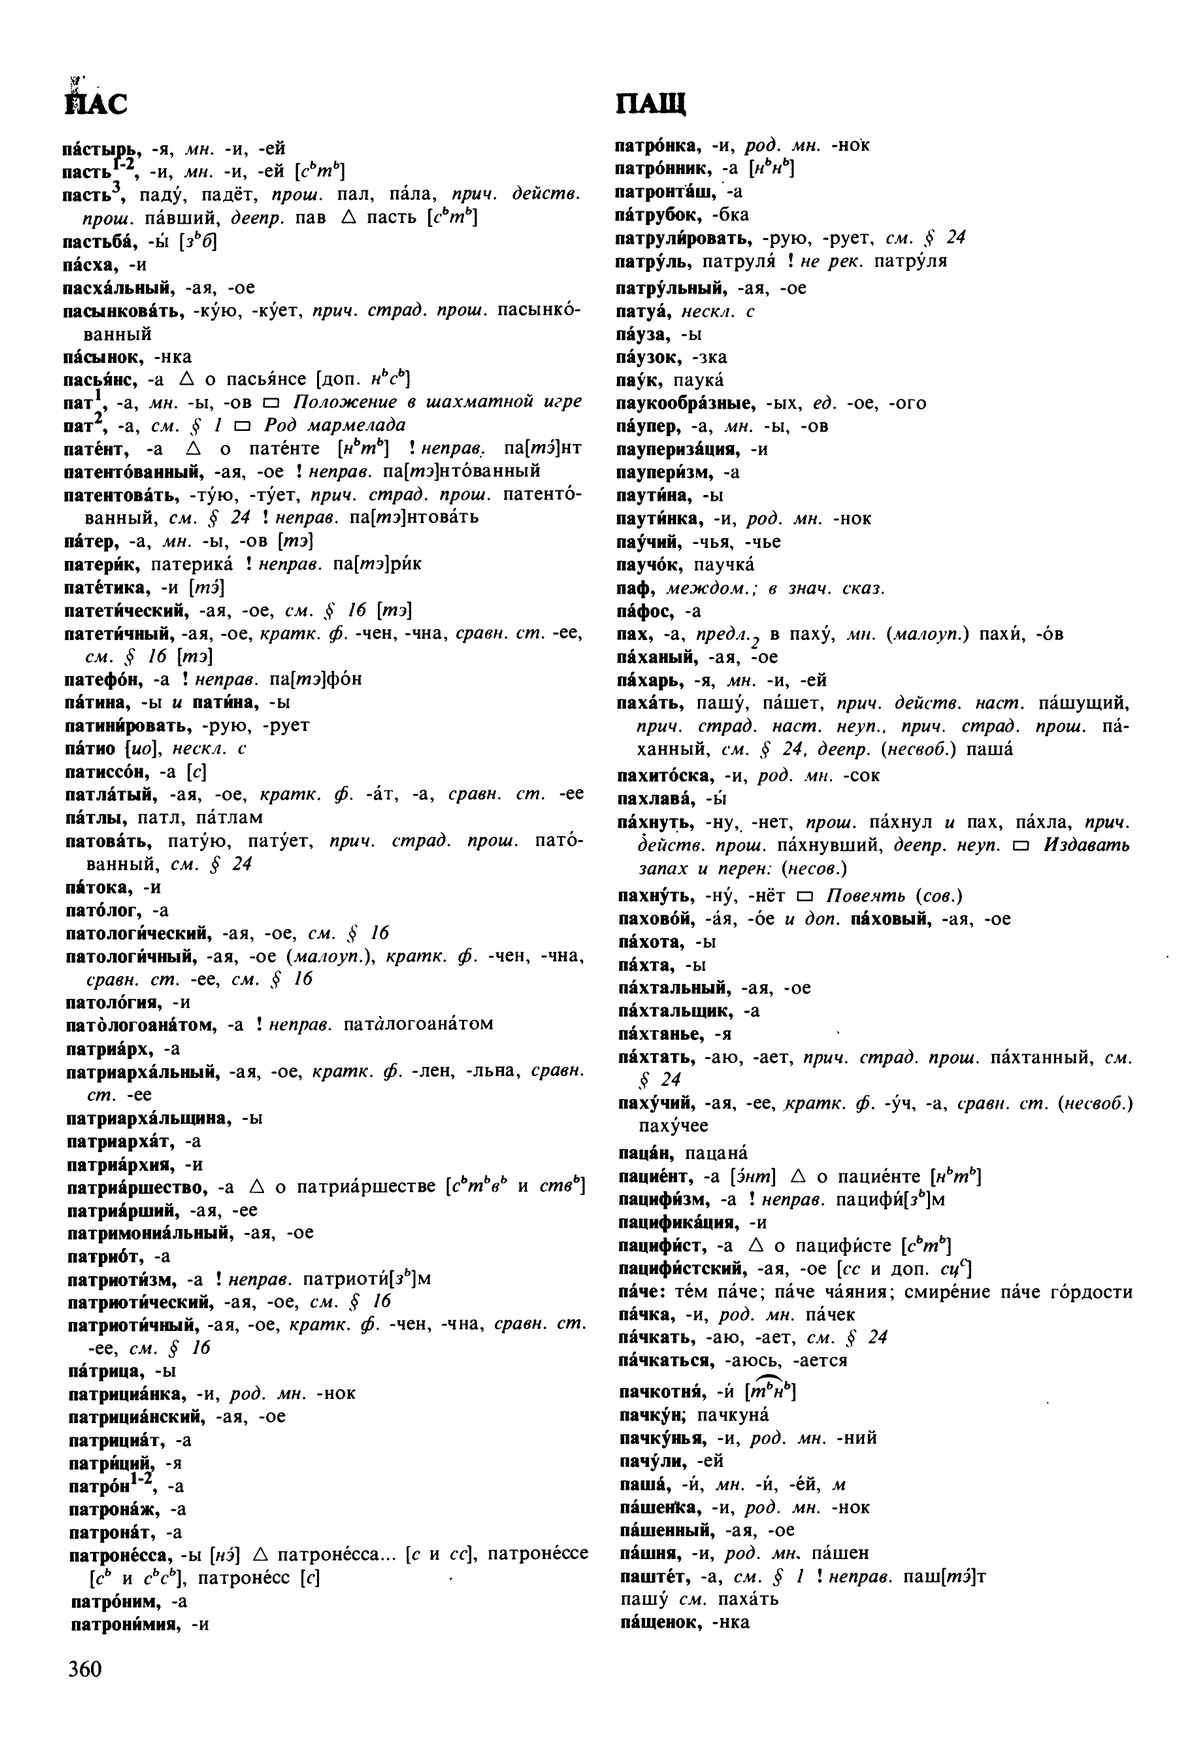 Фотокопия pdf / скан страницы 360 орфоэпического словаря под редакцией Аванесова (5 издание, 1989 год)